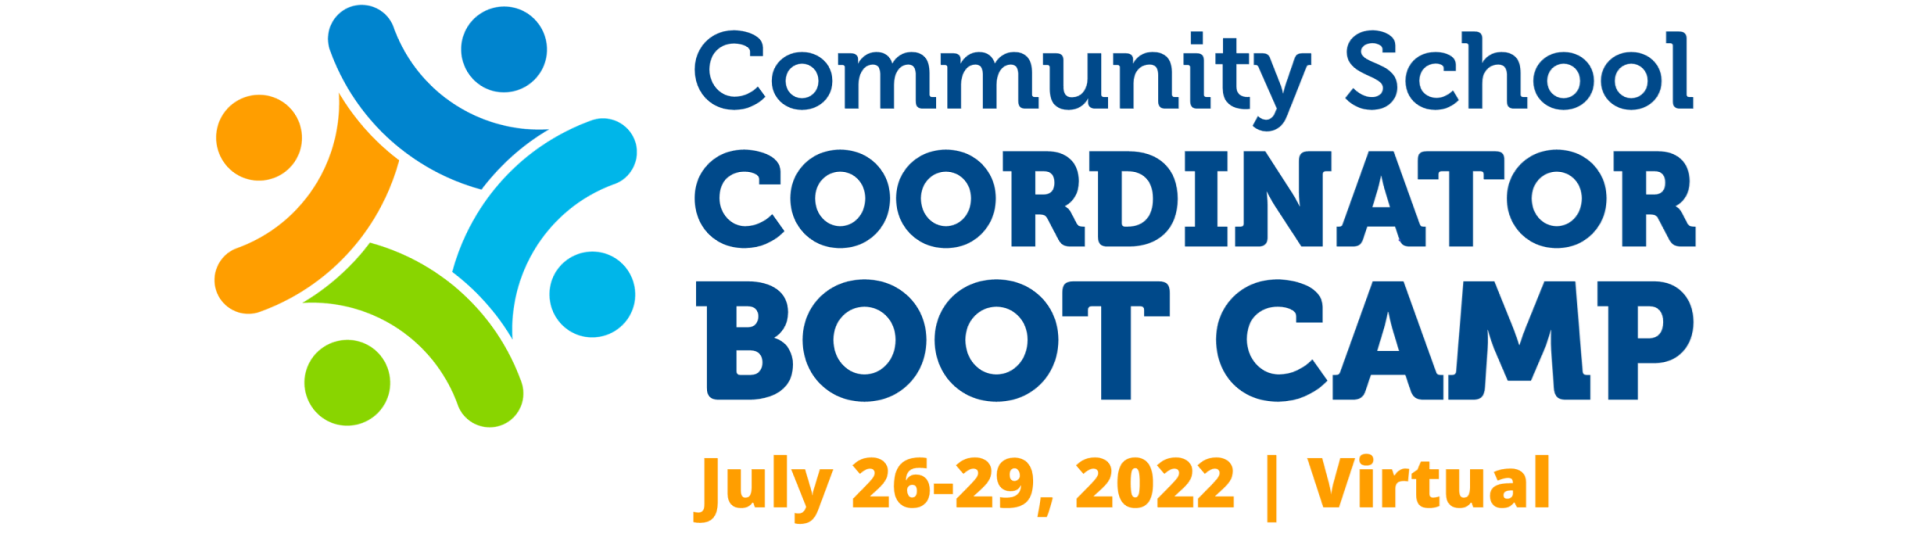 Community School Coordinator Boot Camp